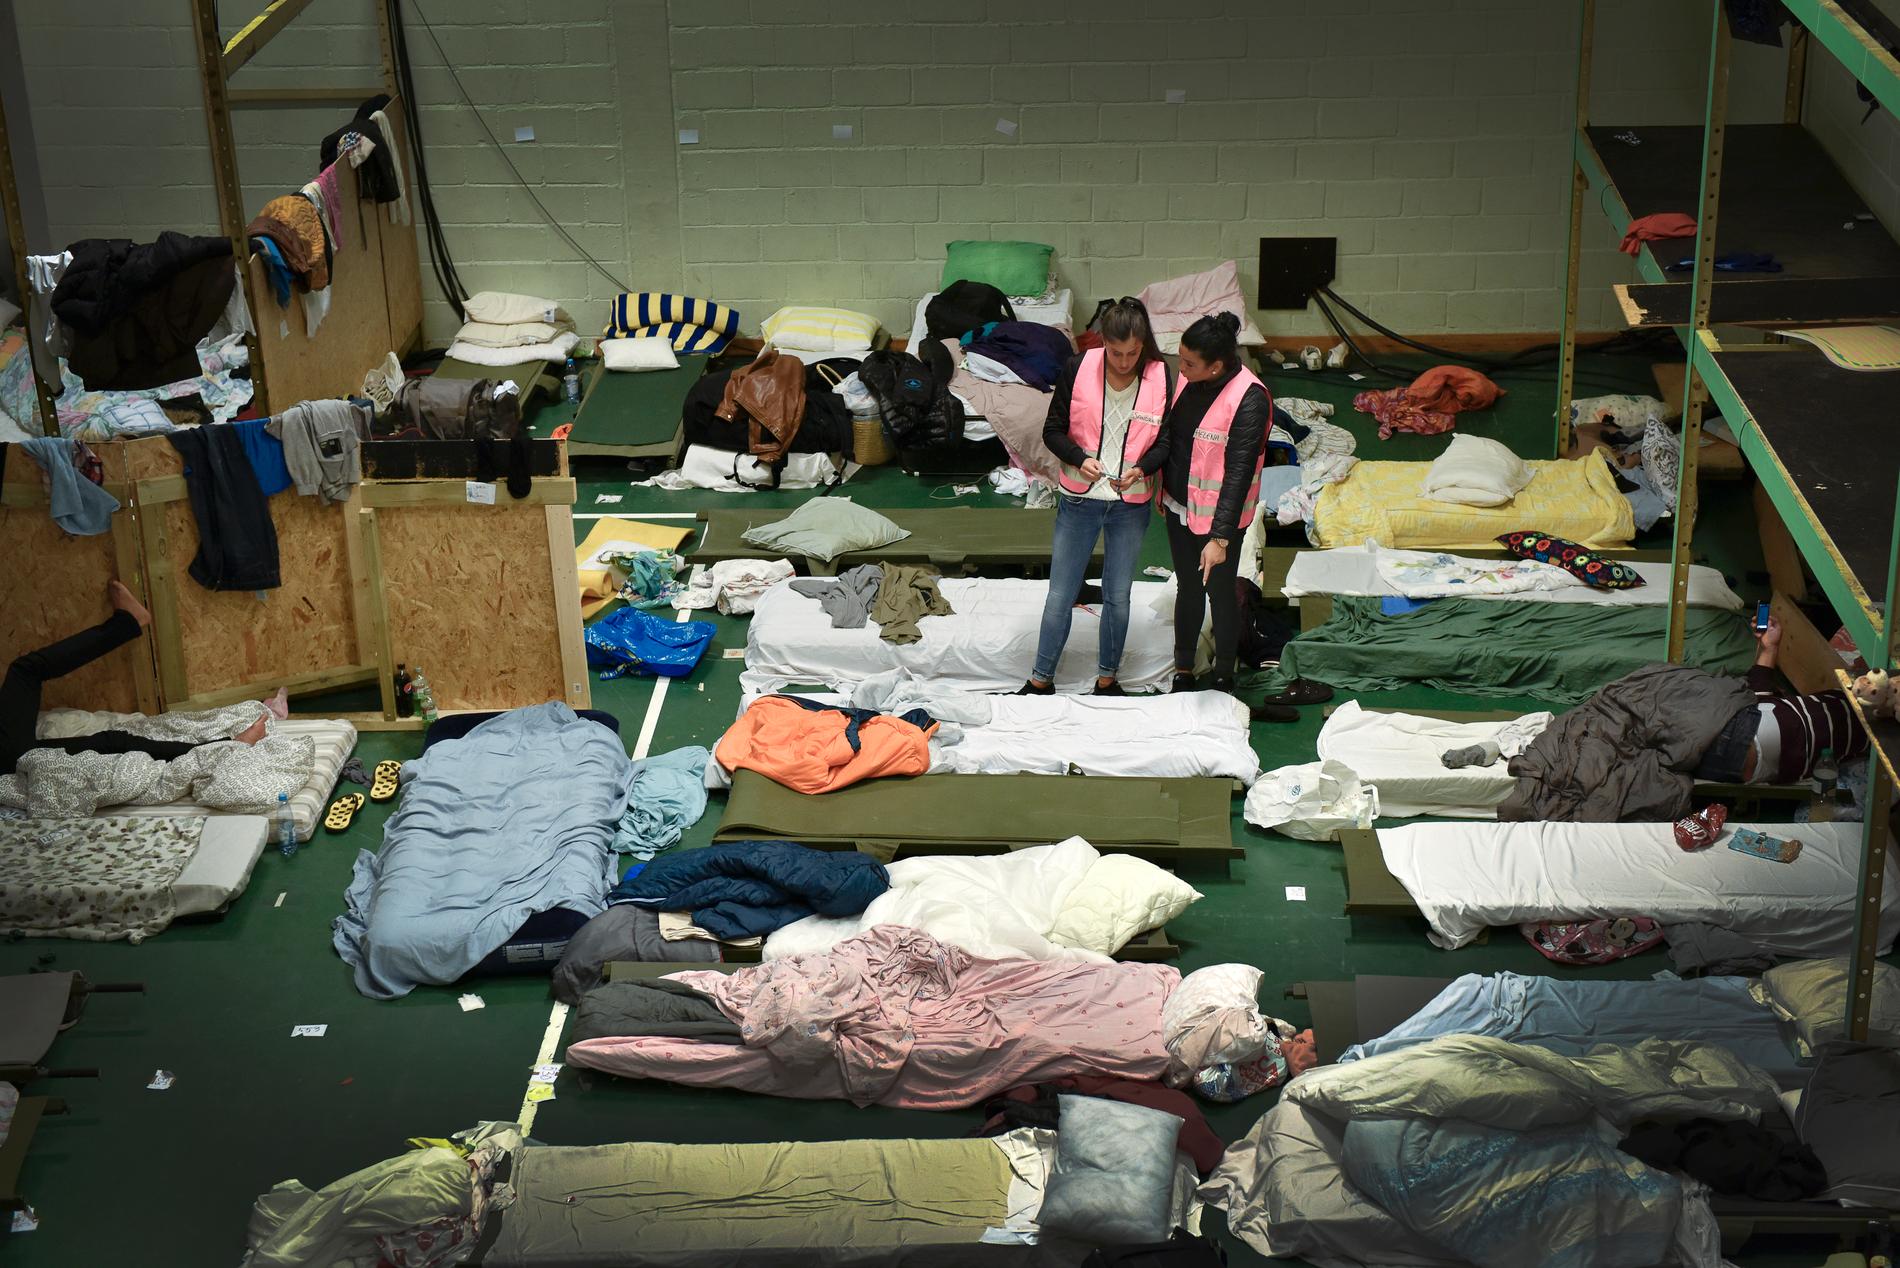 September 2015: En klubblokal i Nacka förvandlas till ett transitboende för flyktingar. Arkivbild